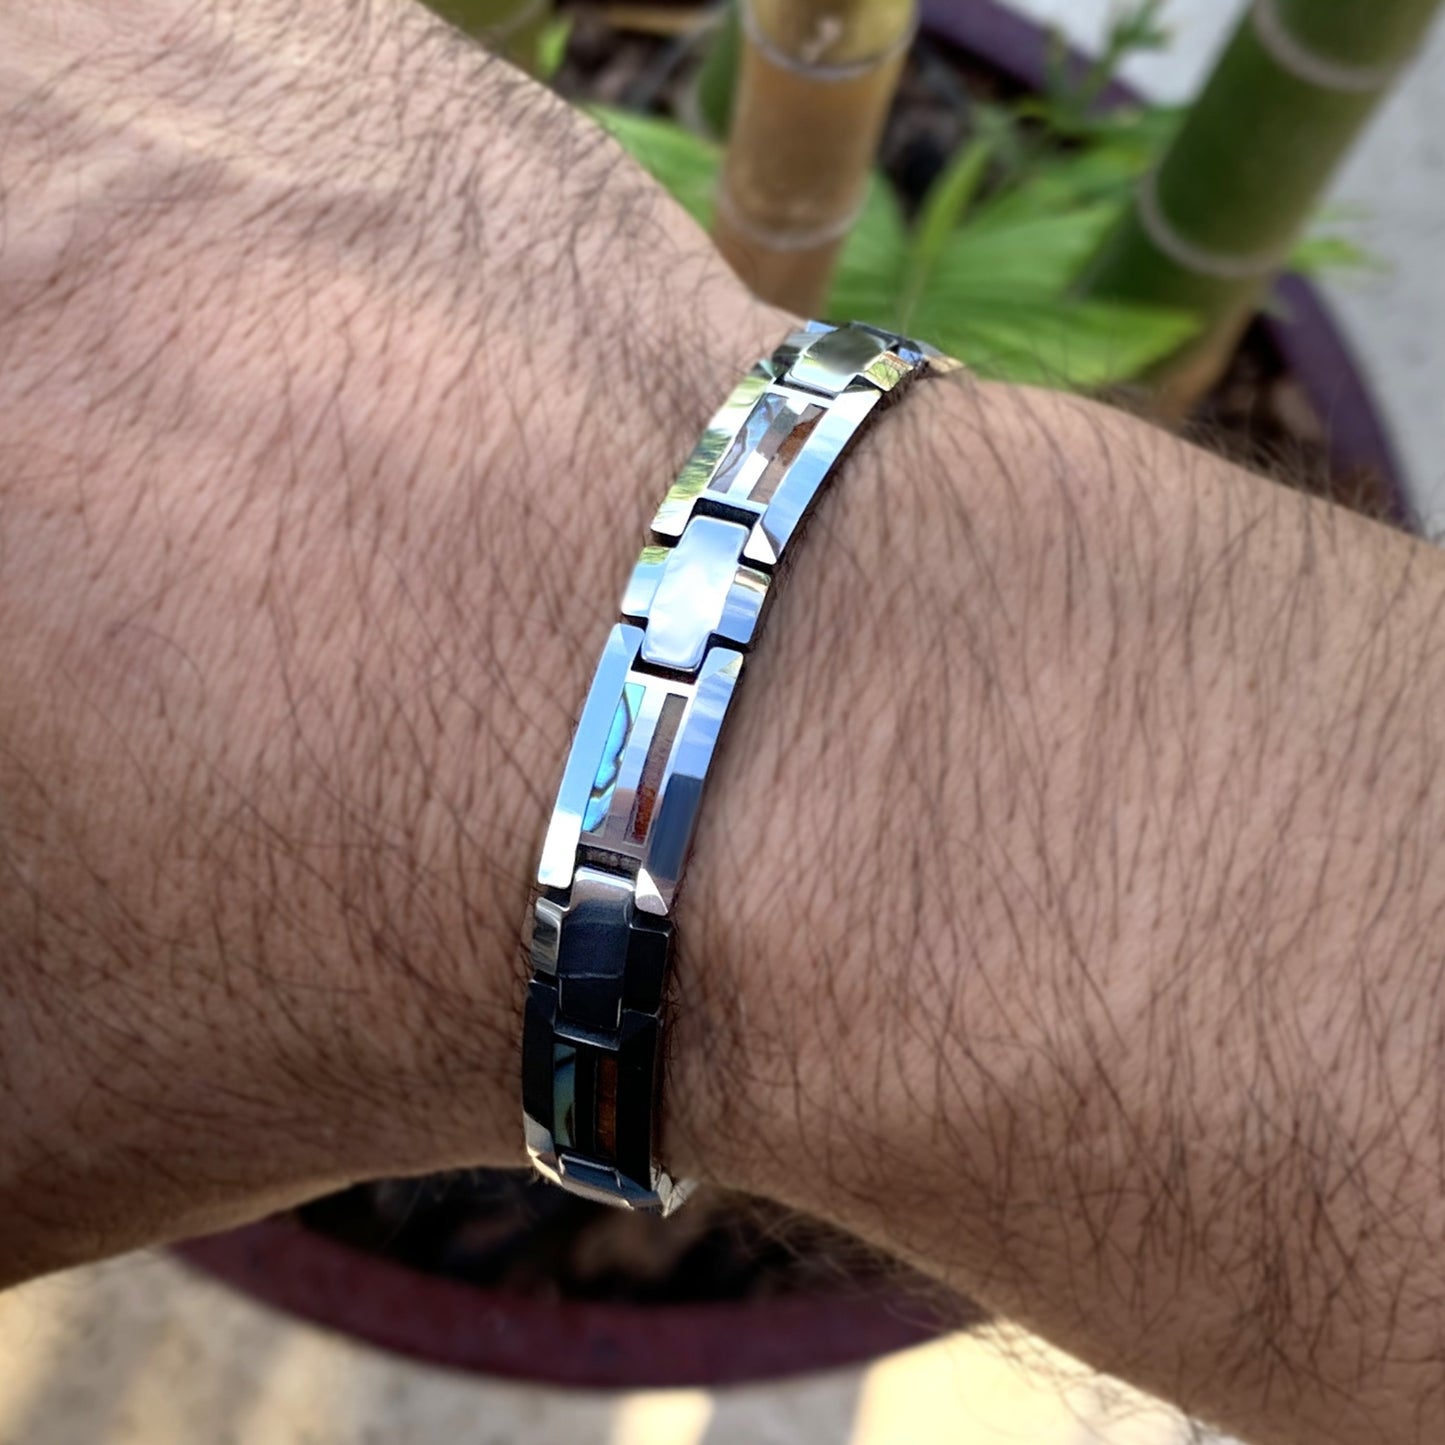 Buy Aatish Golden Link Single Line Tungsten Bracelet at Amazon.in